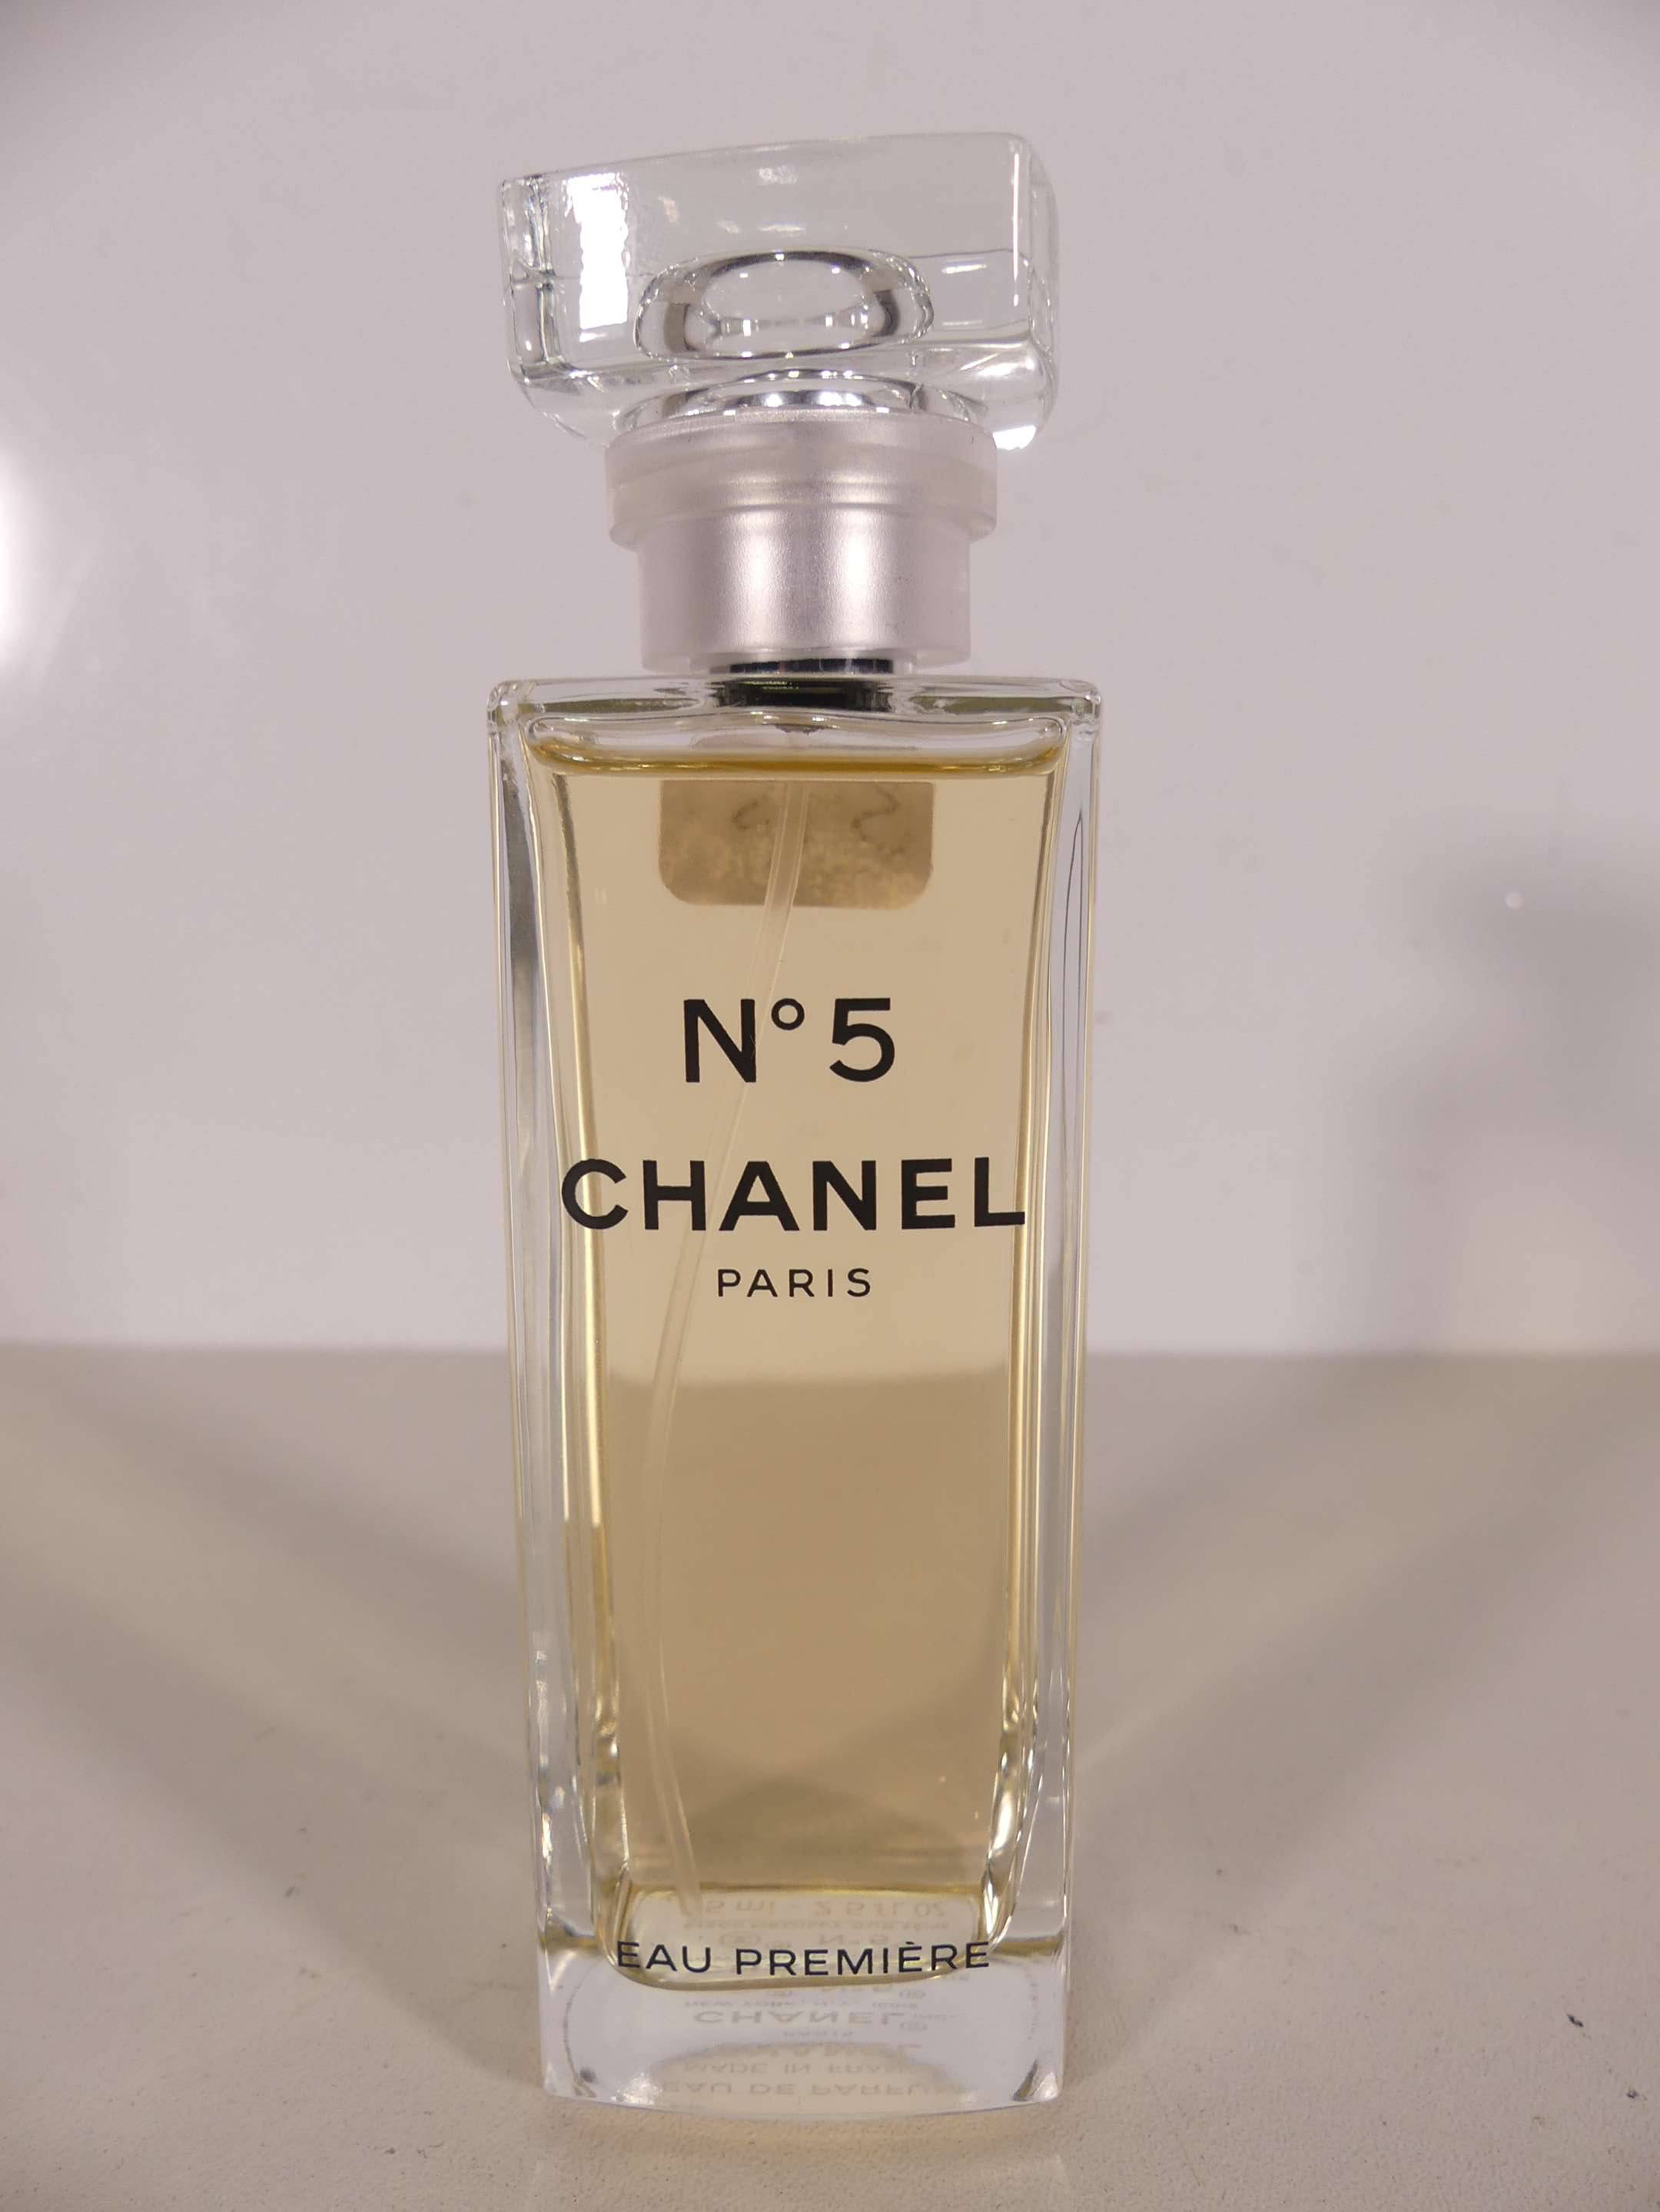 CHANEL N°5 - Eau première. Eau de parfum 75 mL. Sans boite